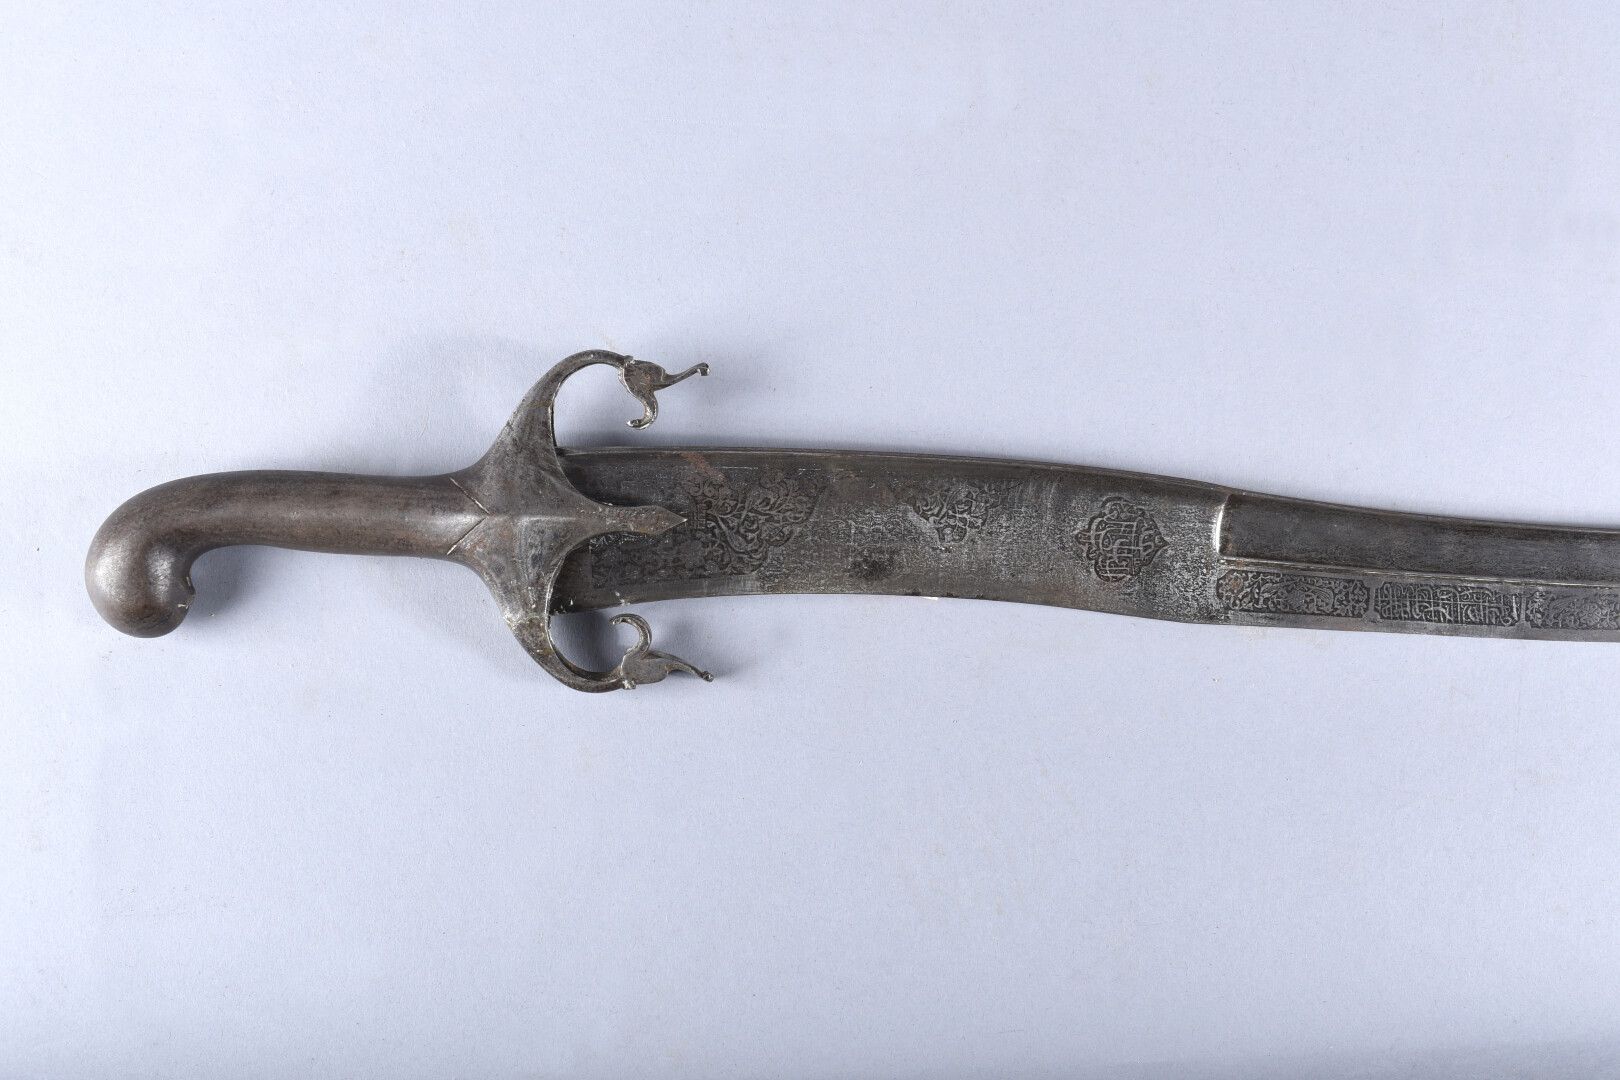 Null 克里奇-奥斯曼剑。所有的铁制配件。78厘米长的雅塔根形状的弧形刀刃，完全刻有交替出现的花卉图案和宗教灵感的铭文的卡口。不带刀鞘。

状况良好。